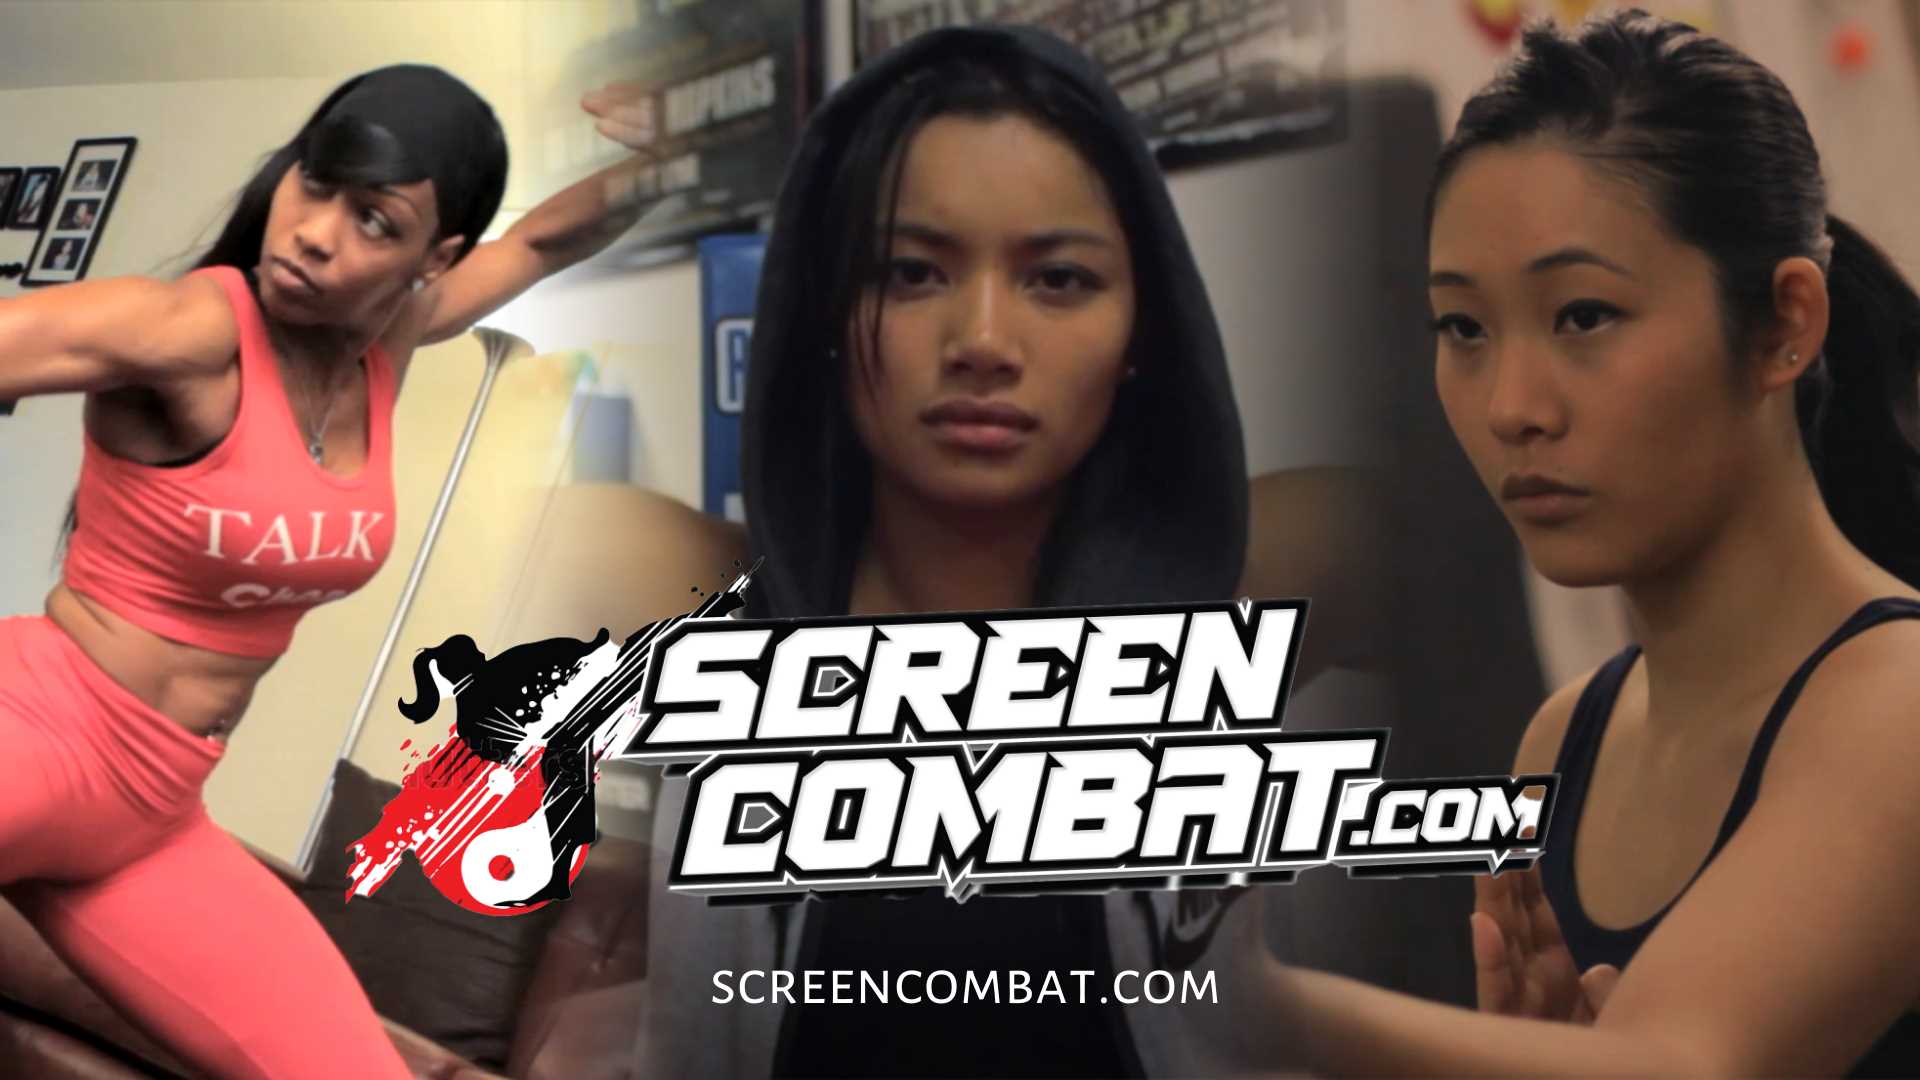 Screen Combat | WATCH NOW!